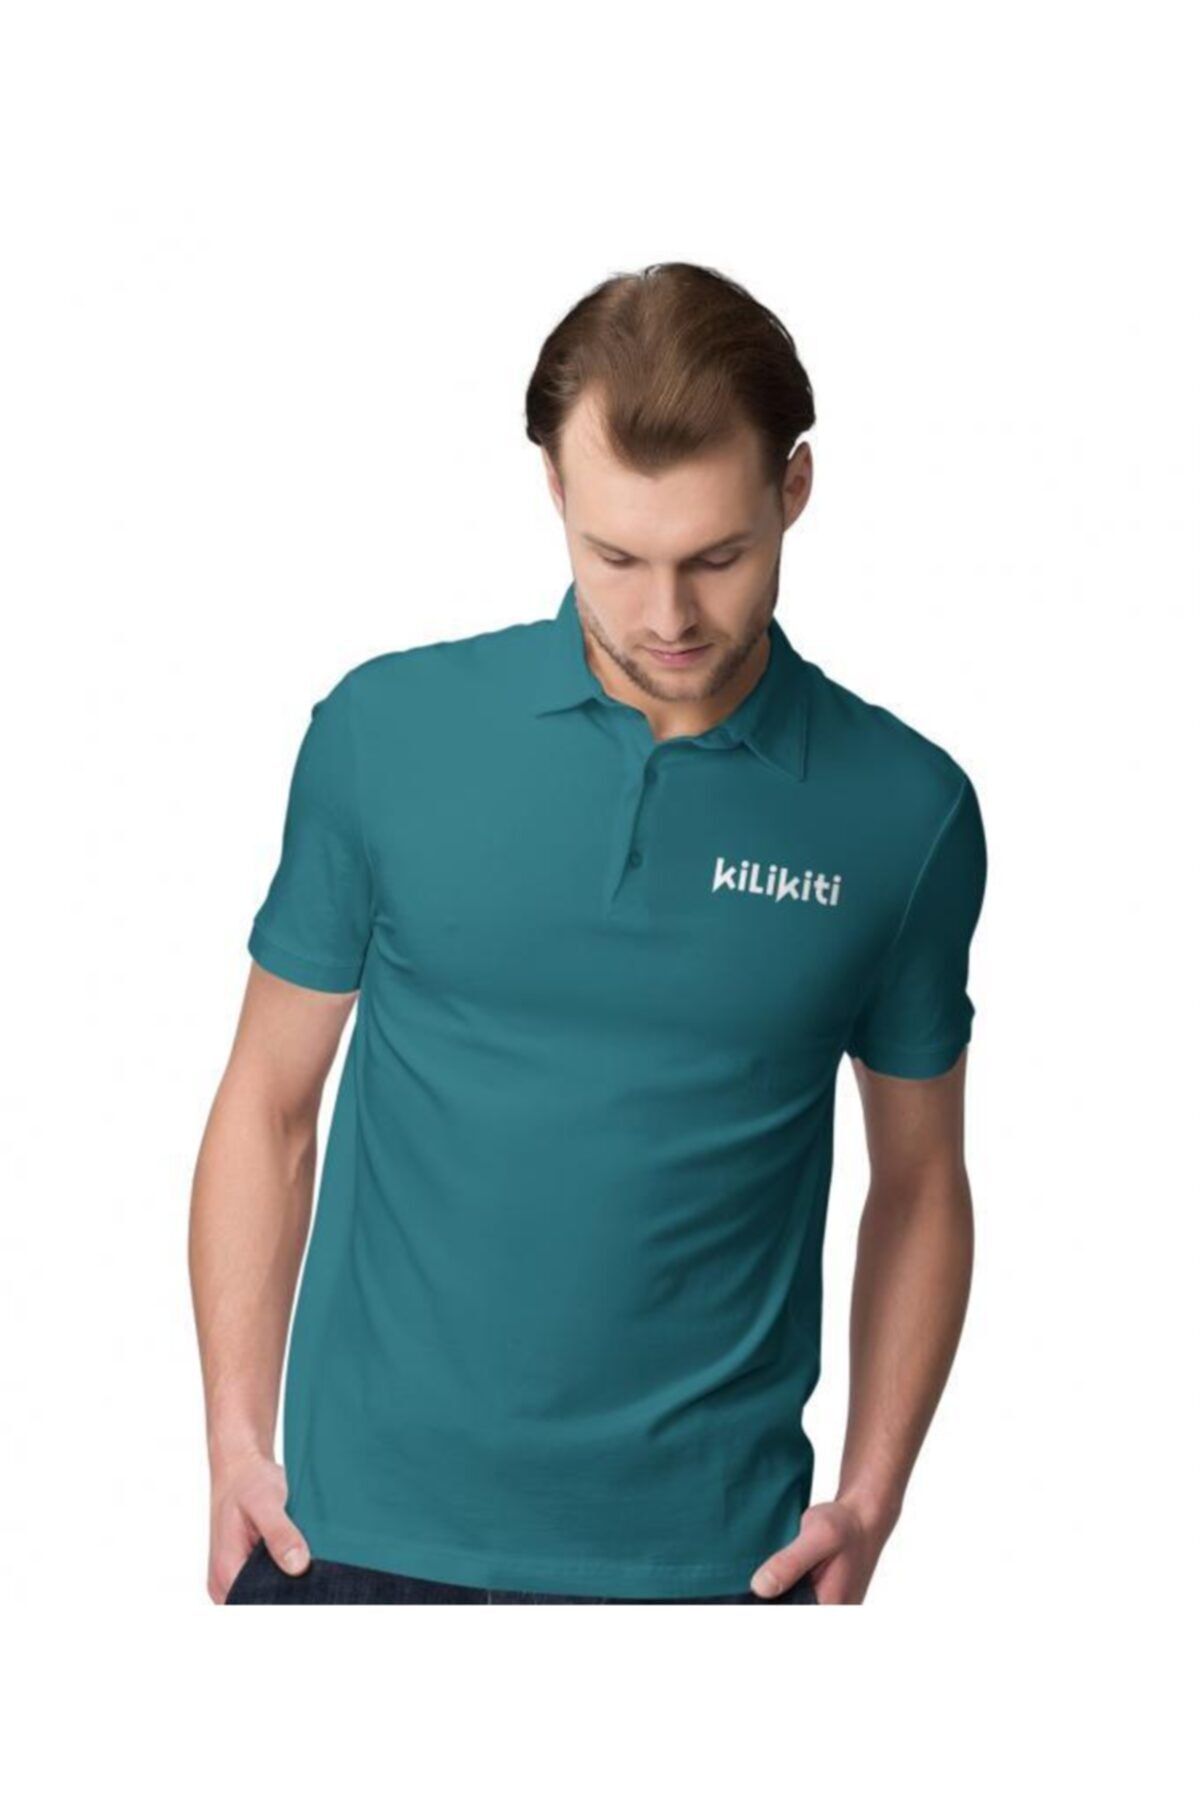 KİLİKİTİ Erkek Spor T-shirt Polo Yaka Petrol Yeşili